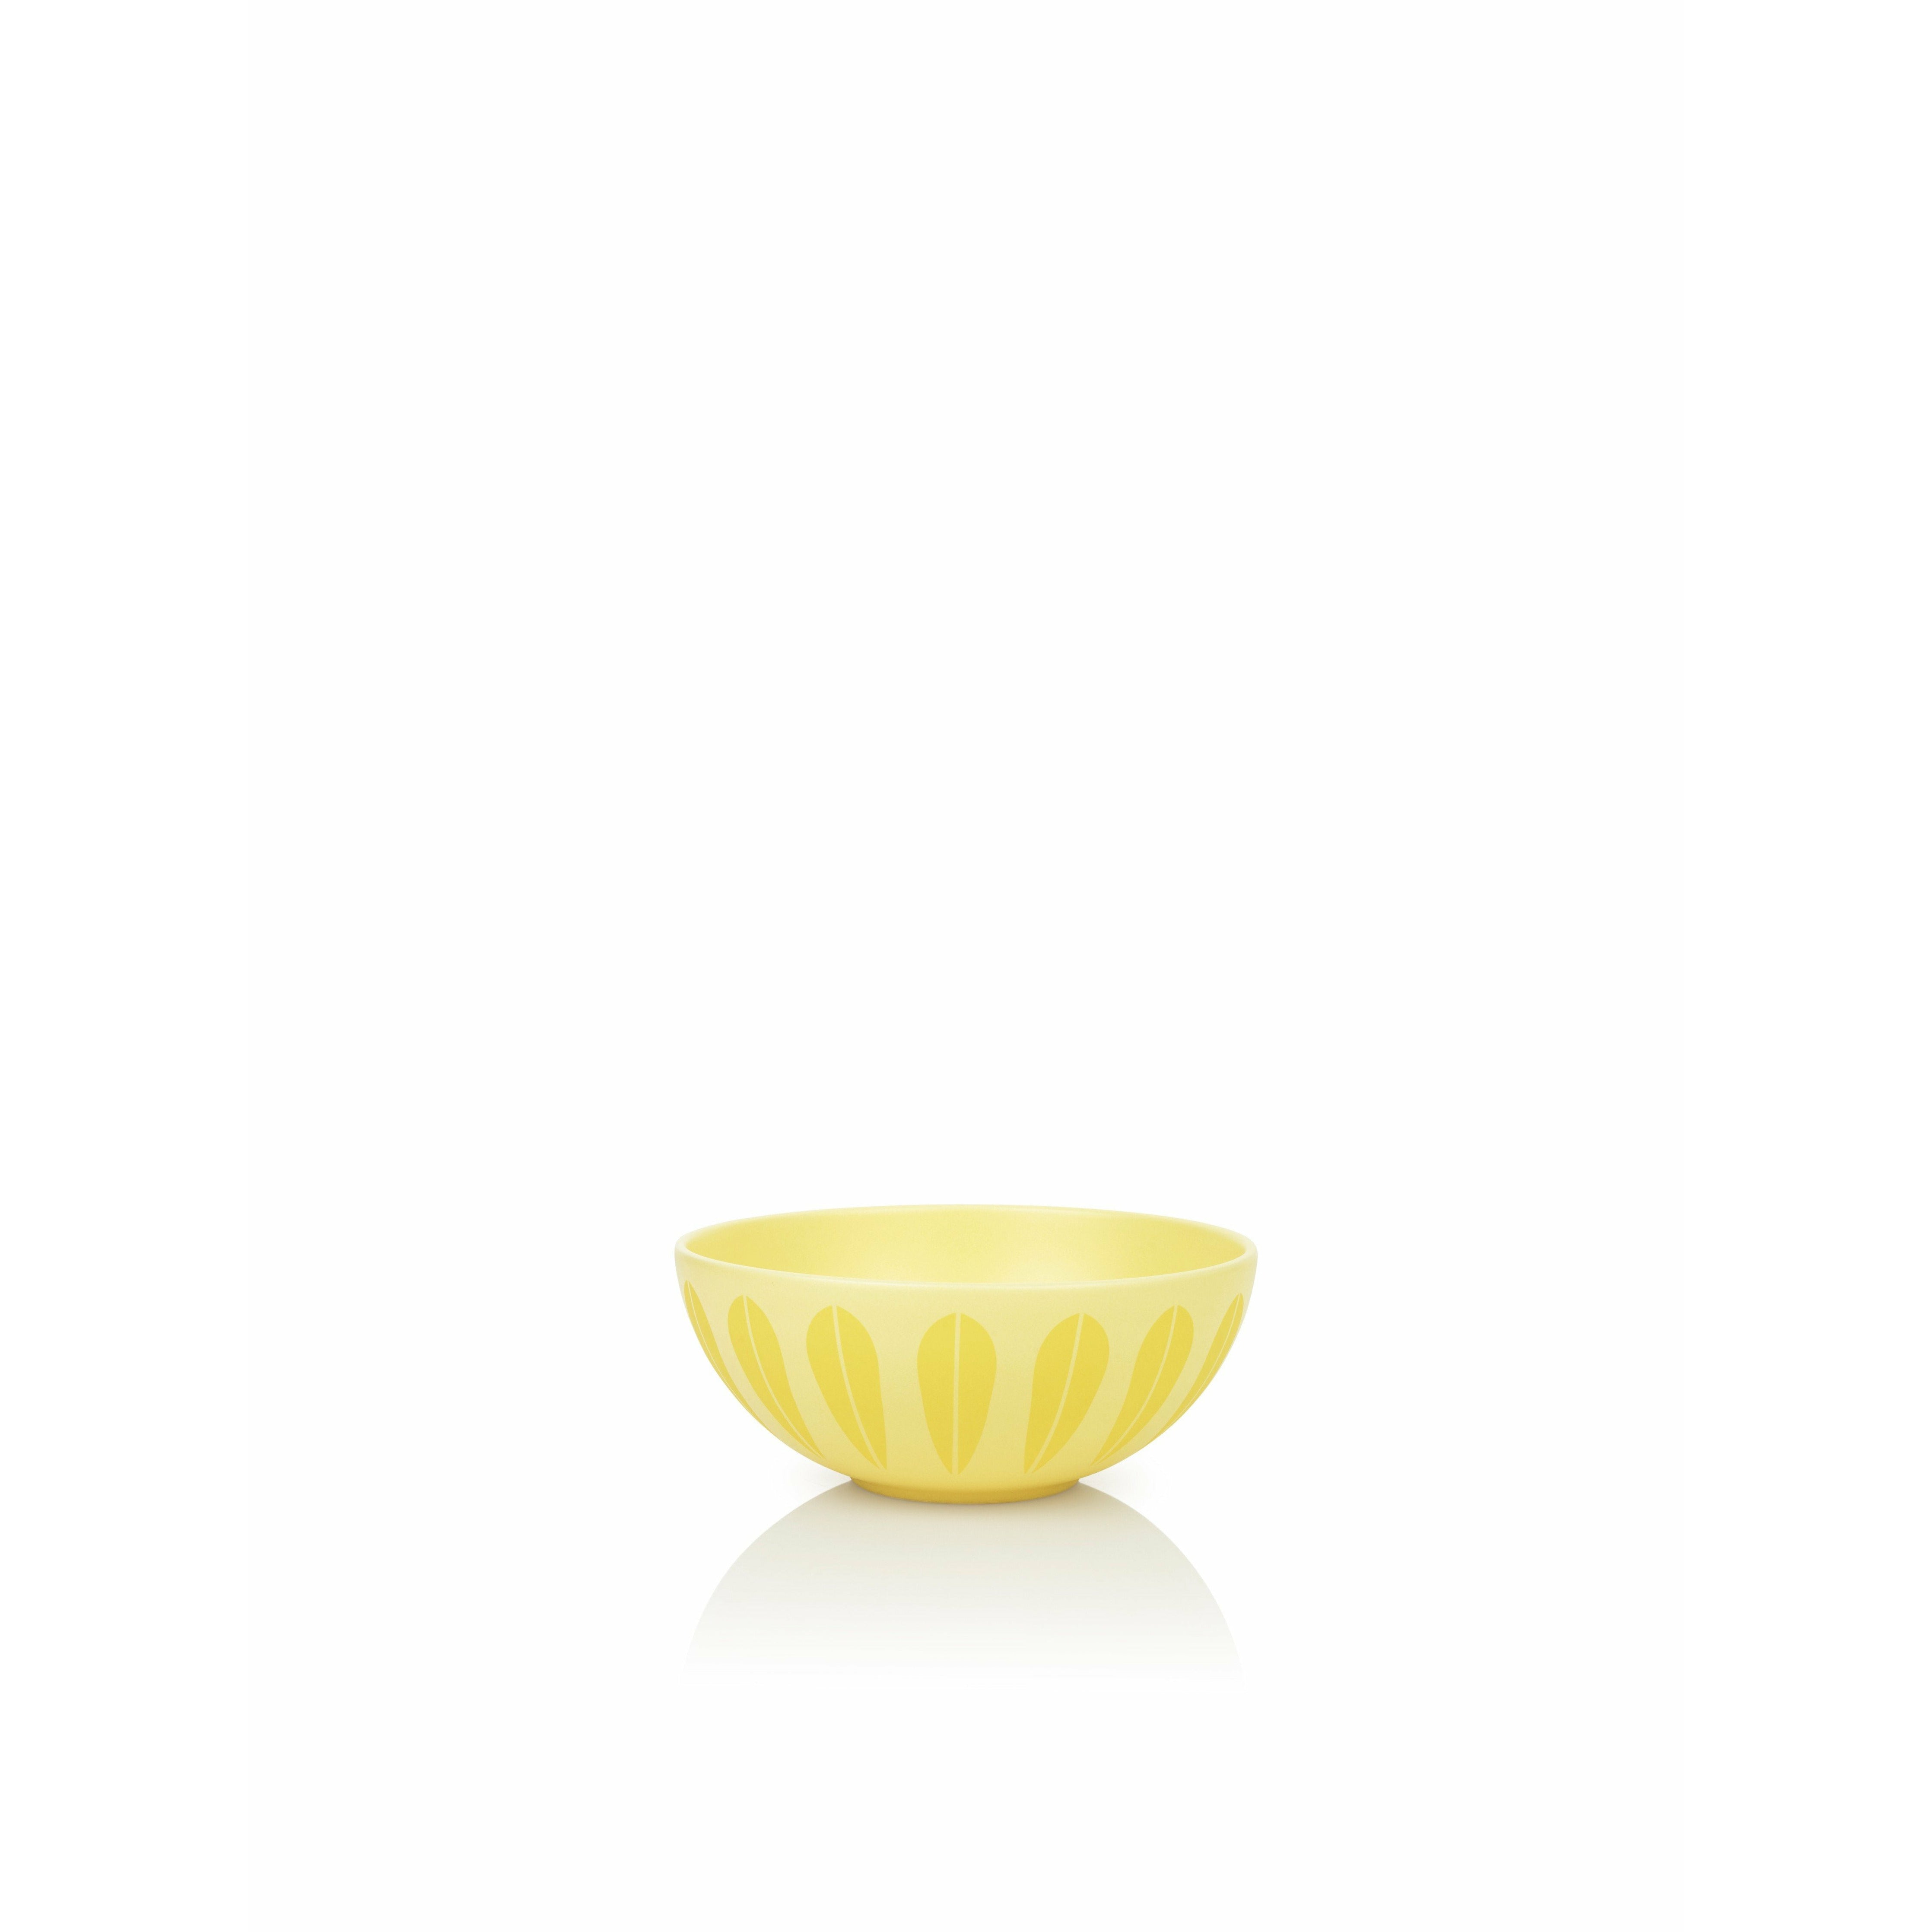 Lucie Kaas Arne Clausen Lotus Bowl Yellow, ø18cm